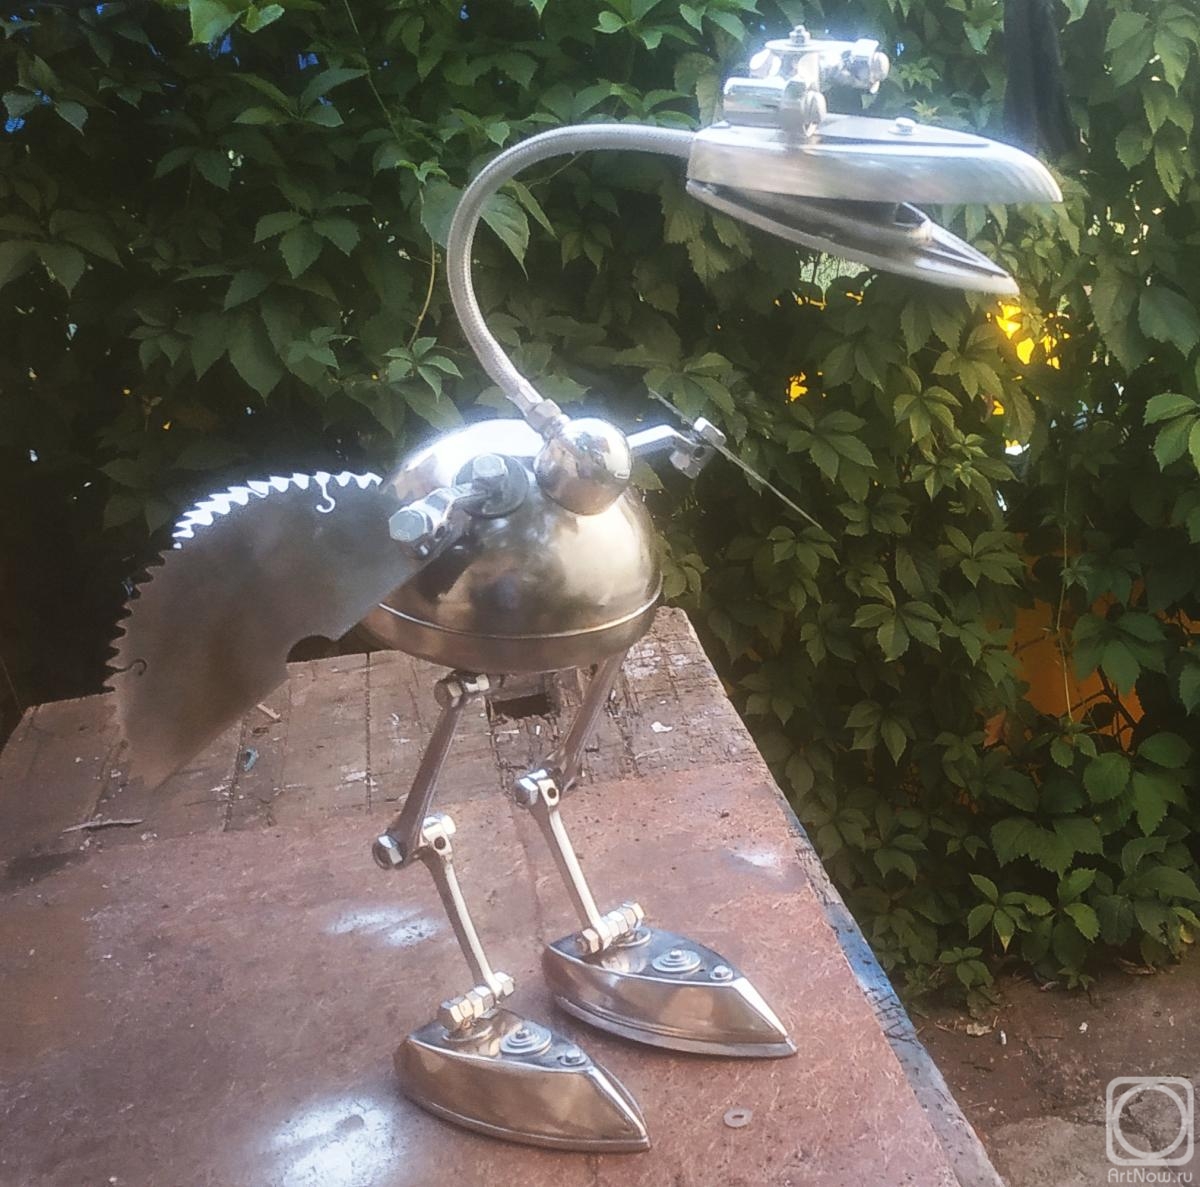 Fedchenko Vladimir. Bird made of scrap metal